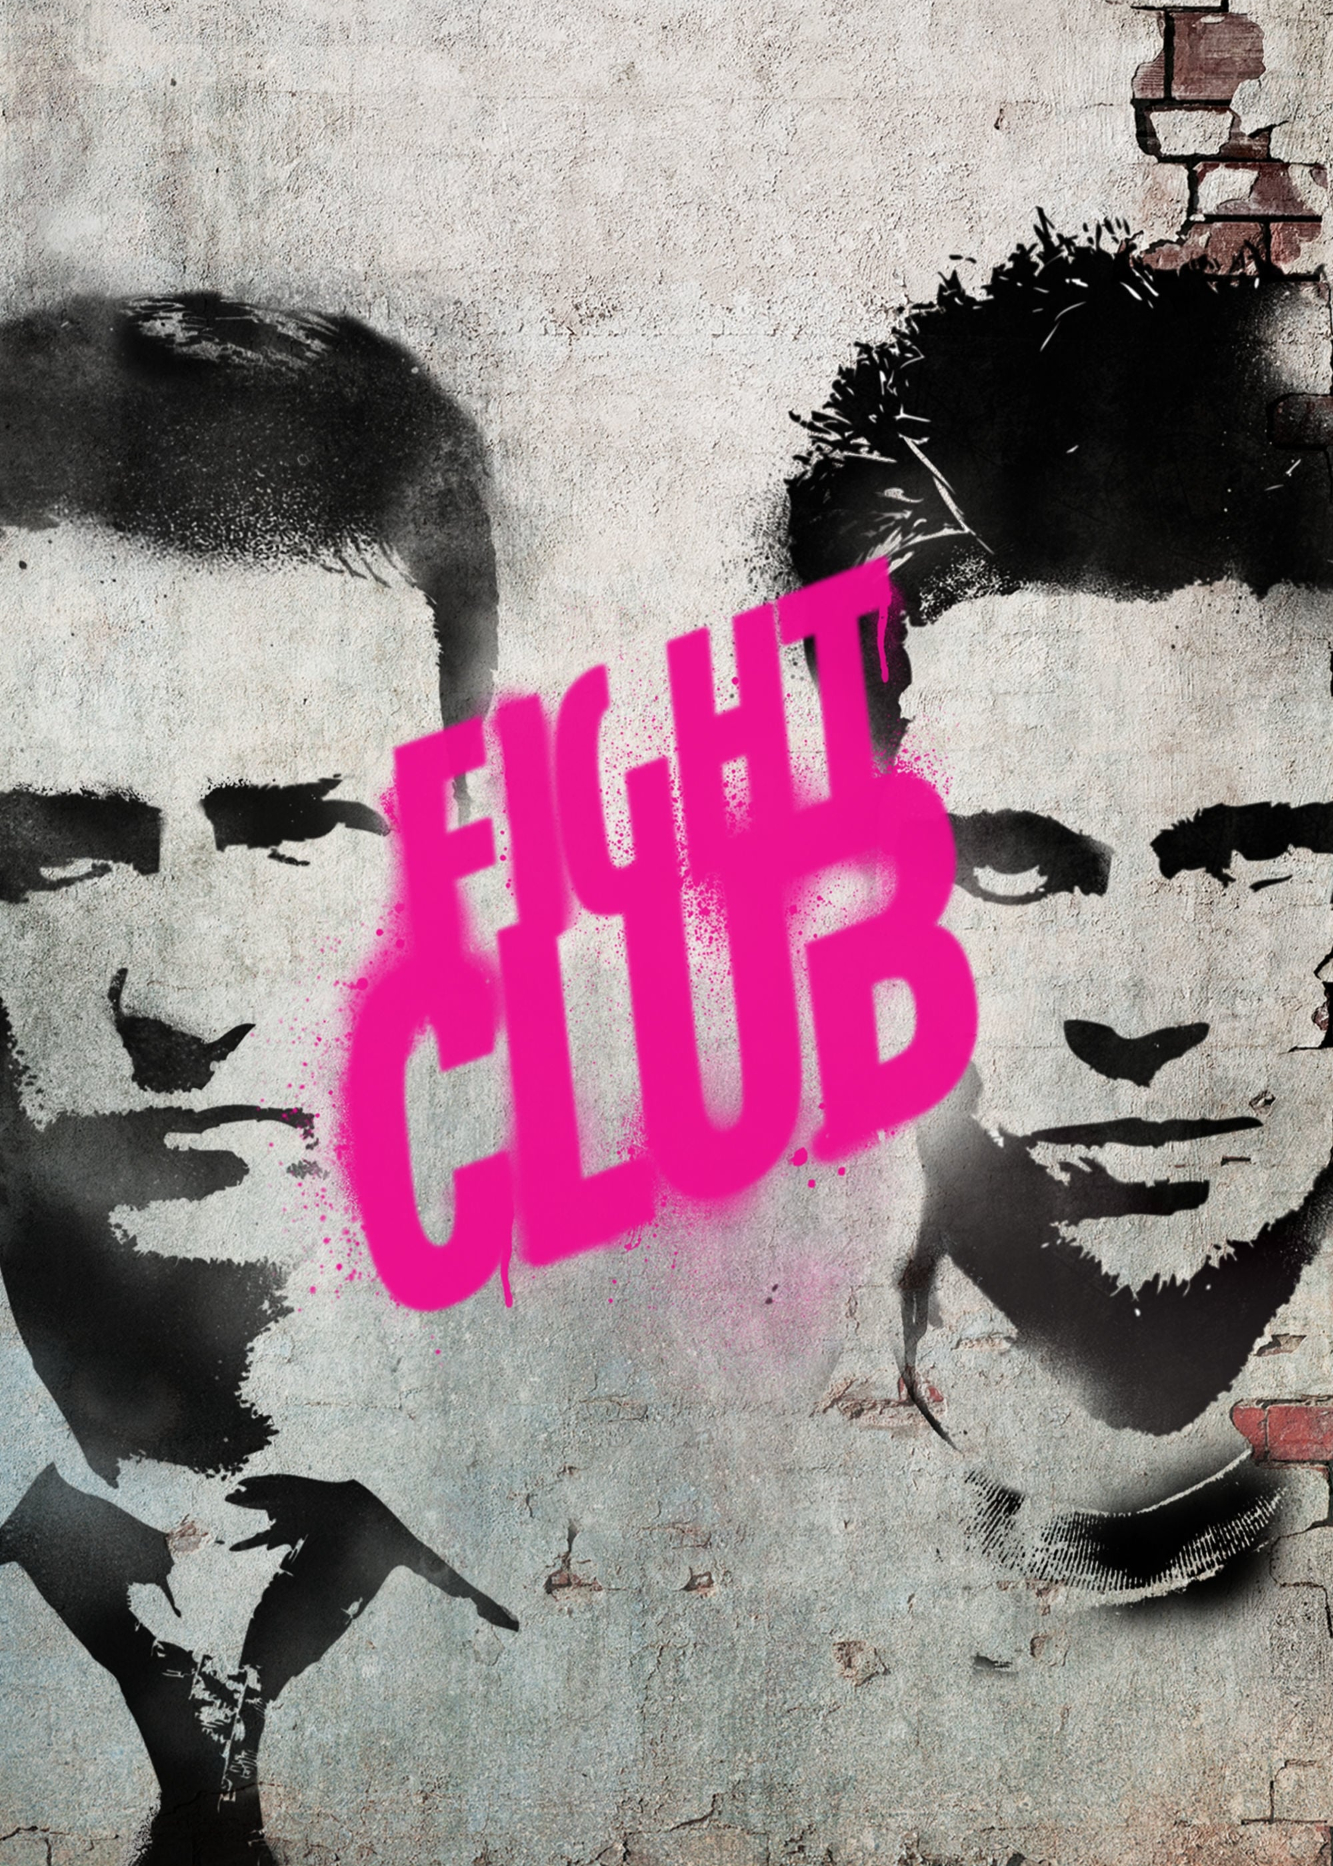 Xem Phim Sàn Đấu Sinh Tử (Fight Club)